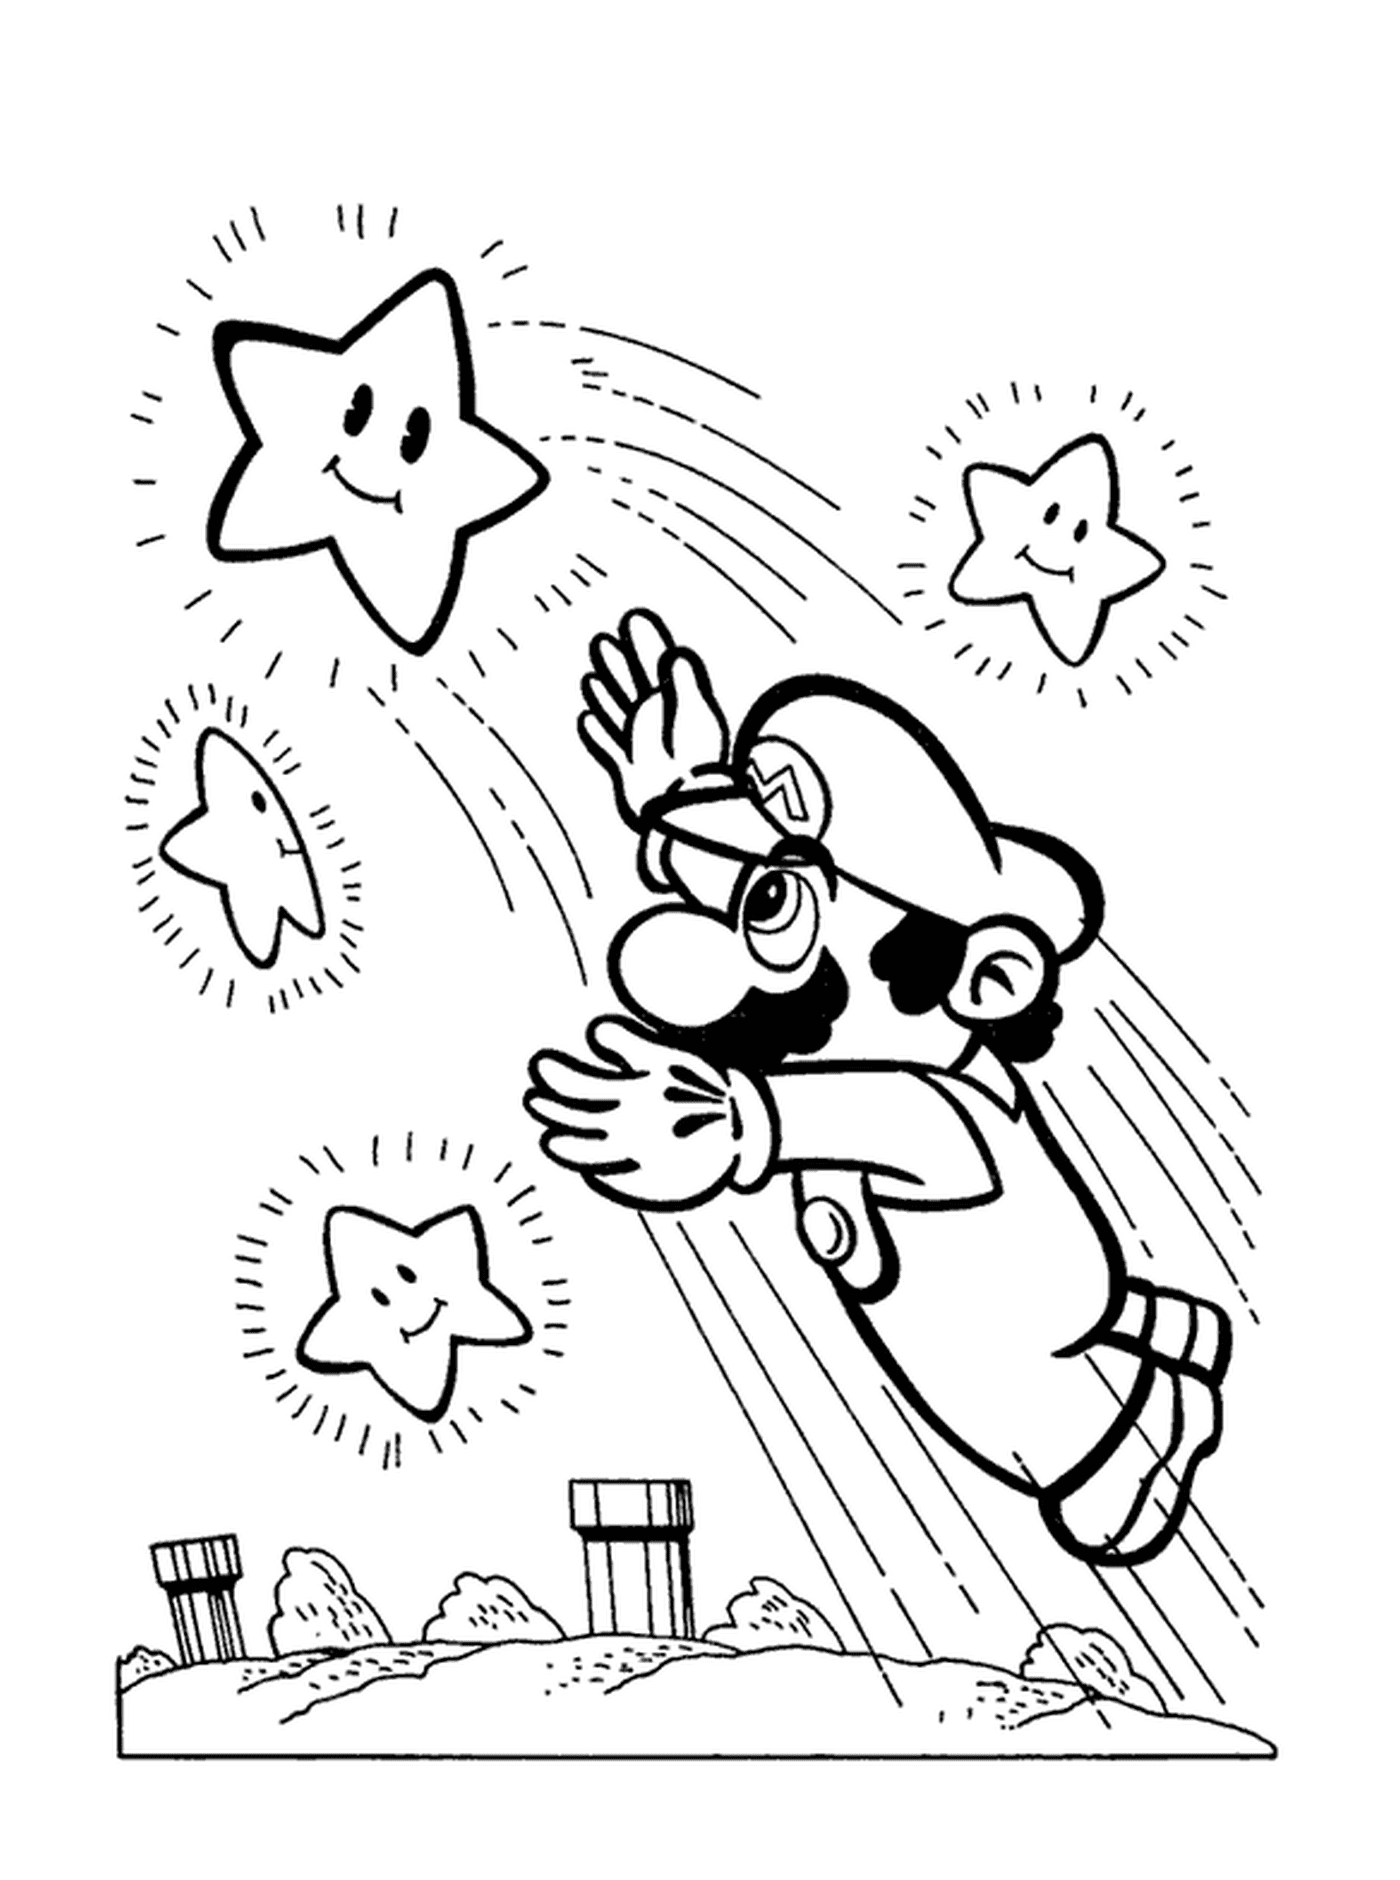  Mario agarra uma estrela brilhante 